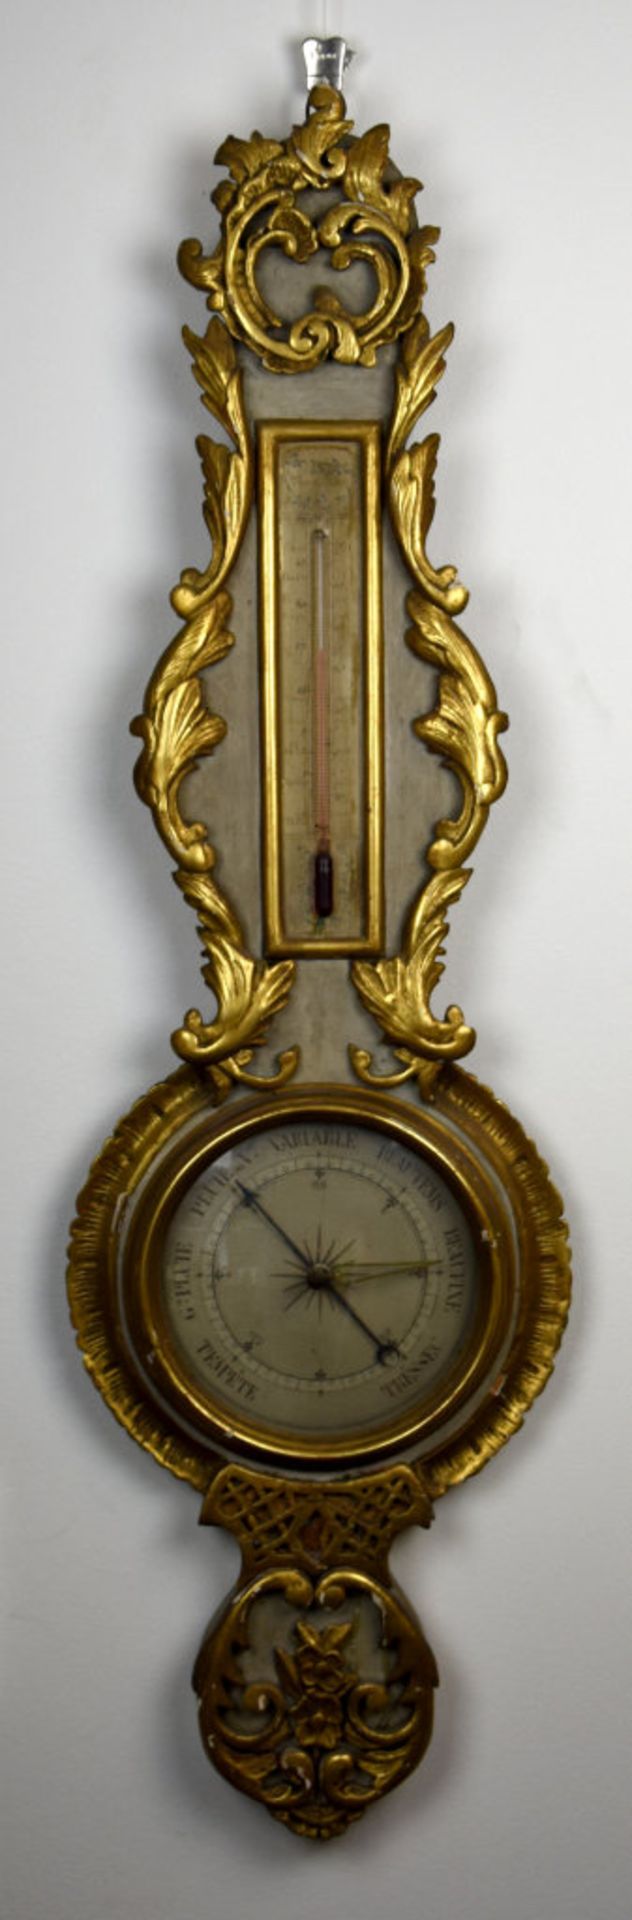 Baromètre-thermomètre, France, XIXe - En bois doré, baromètre à mercure à [...] - Image 2 of 3